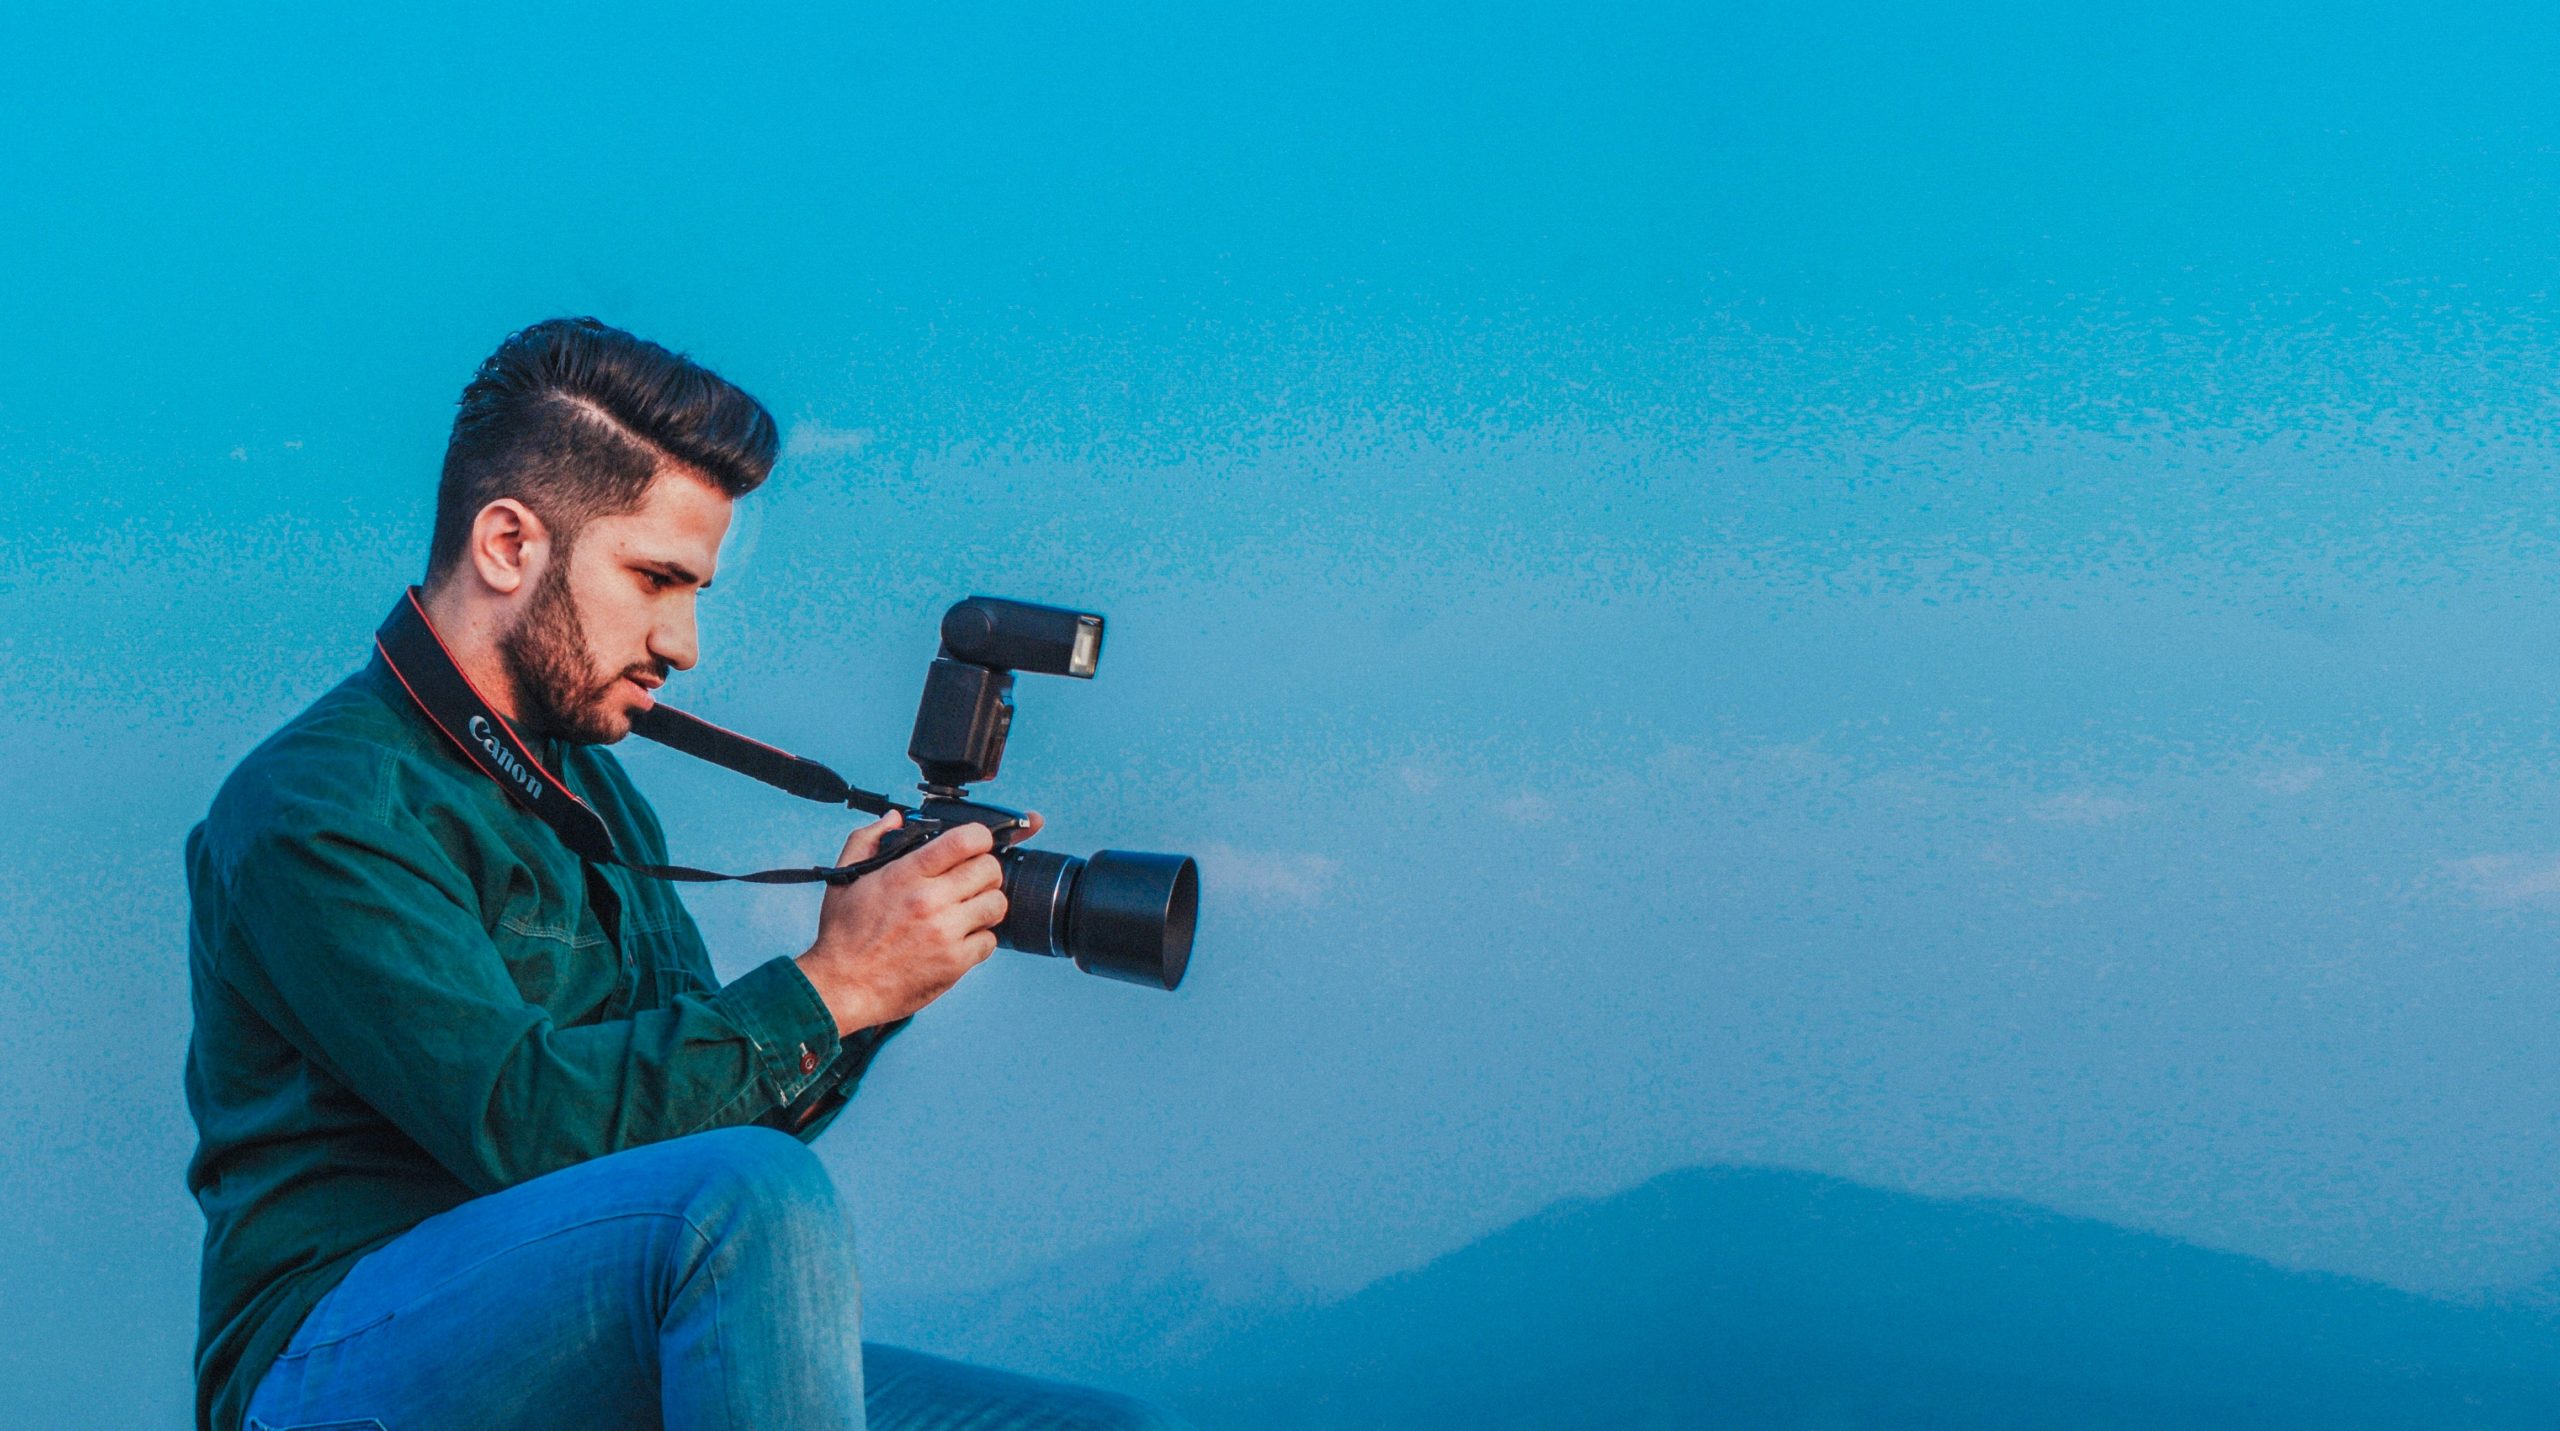 7 consejos para mantener tu equipo fotográfico en buen estado